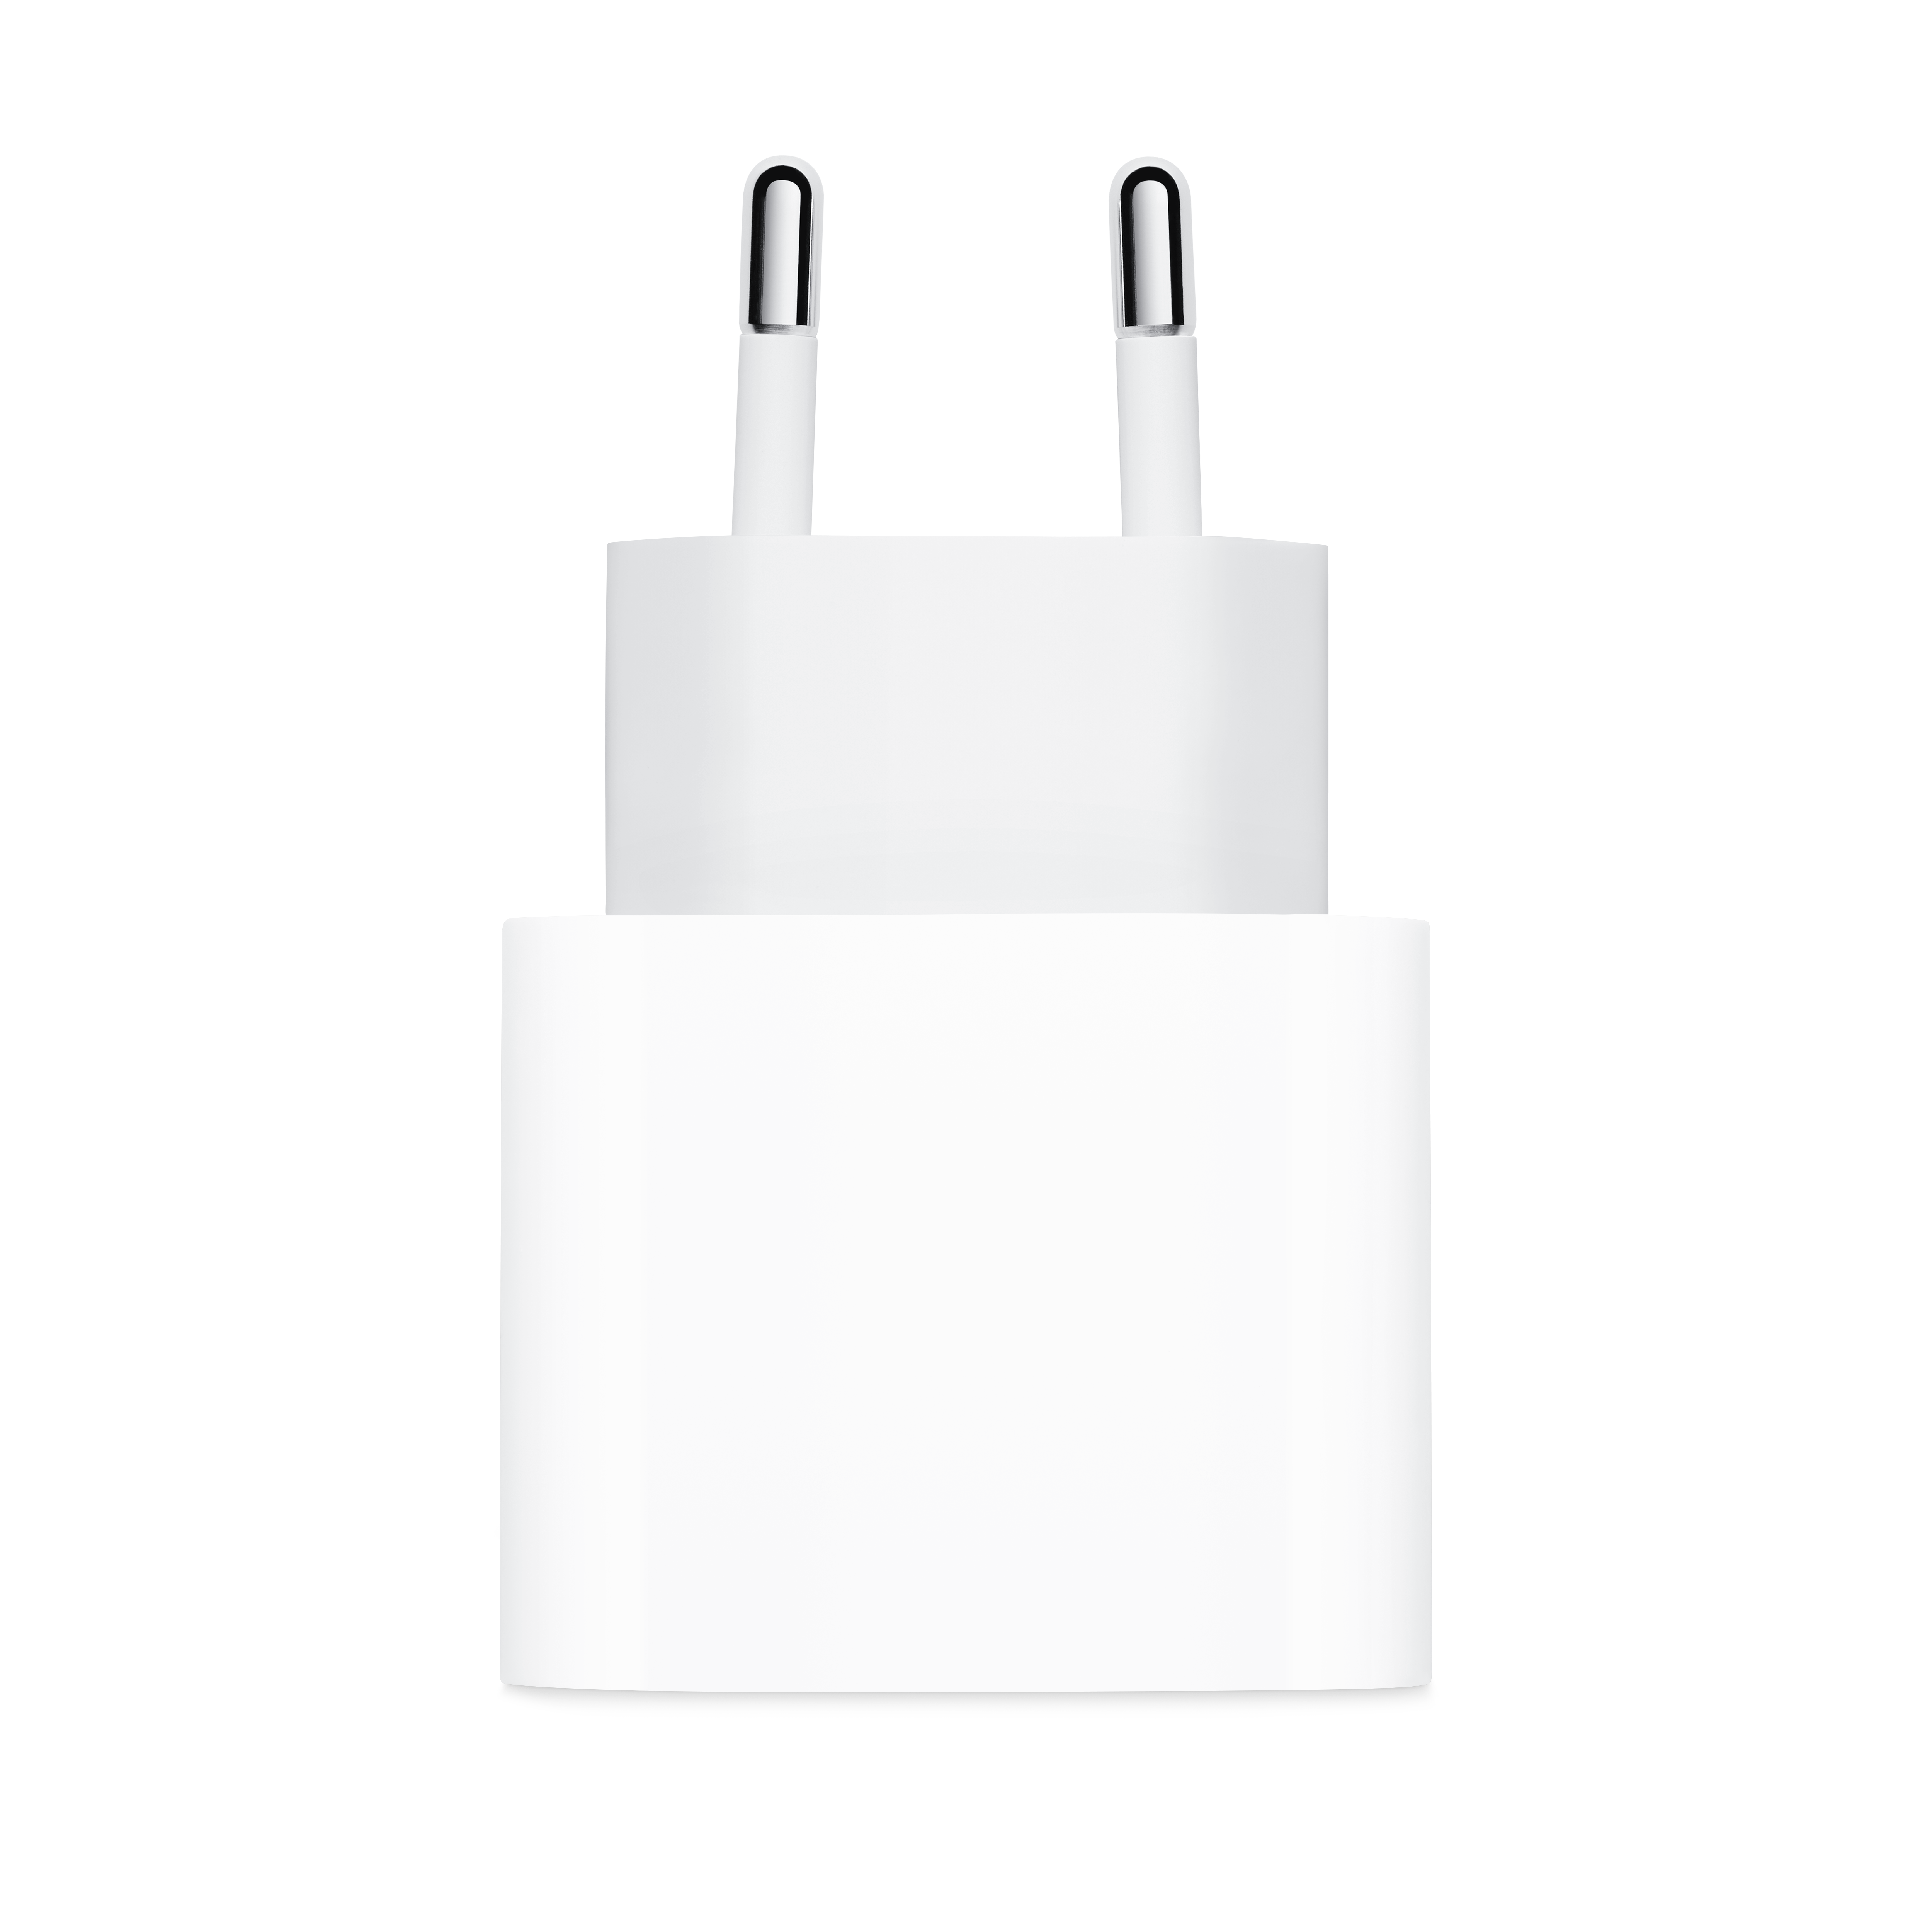 Onbepaald Overstijgen tv Apple USB-C 20W power adapter (origineel) kopen? - Morgen in huis | Partly